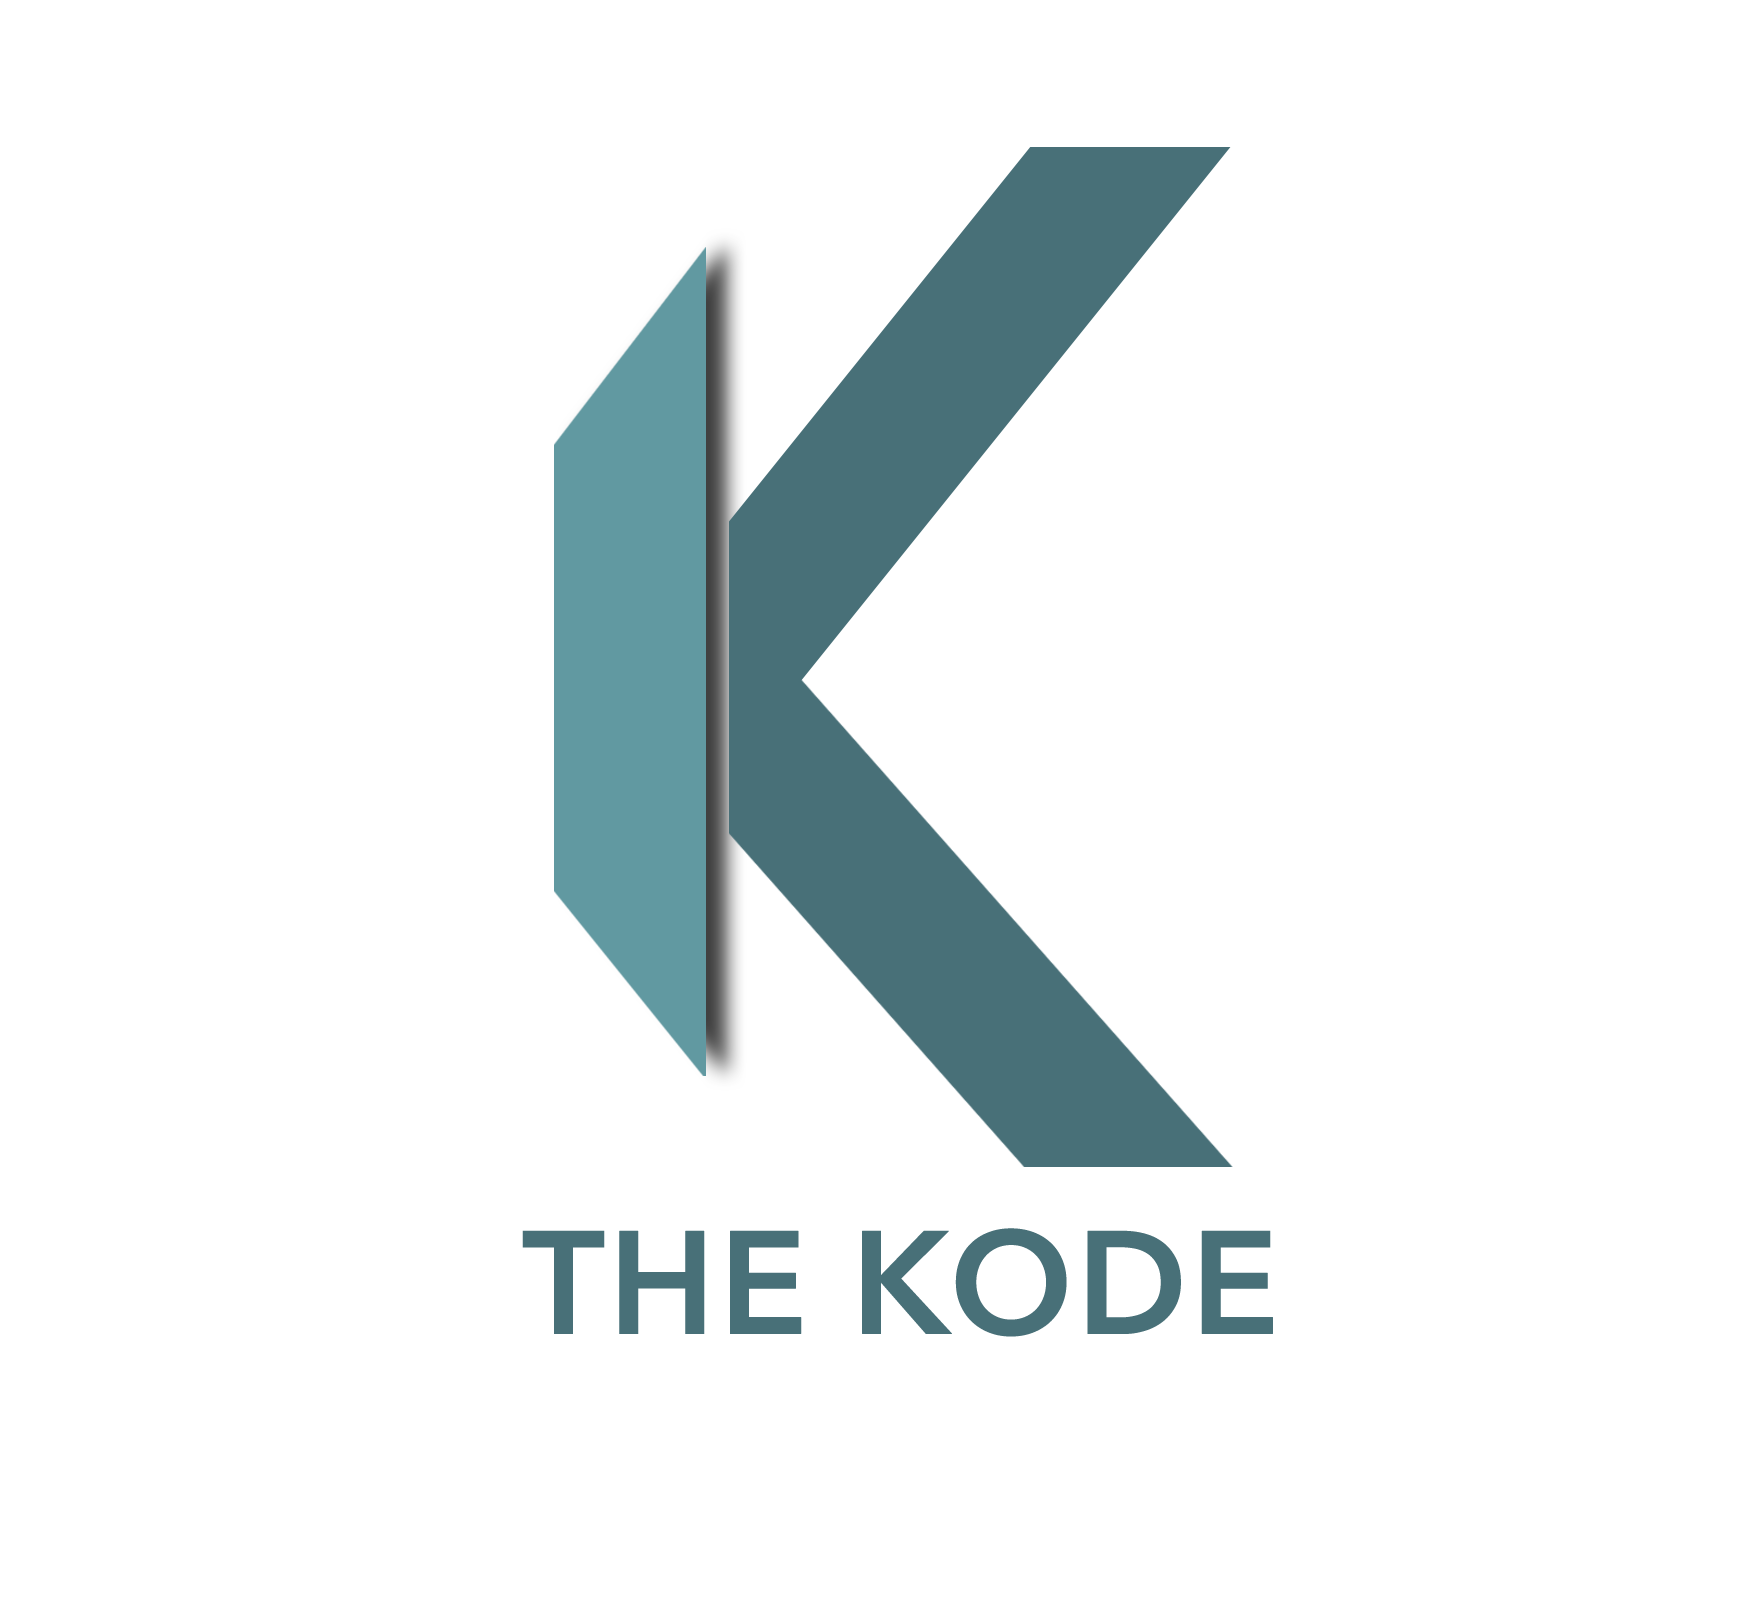 The Kode